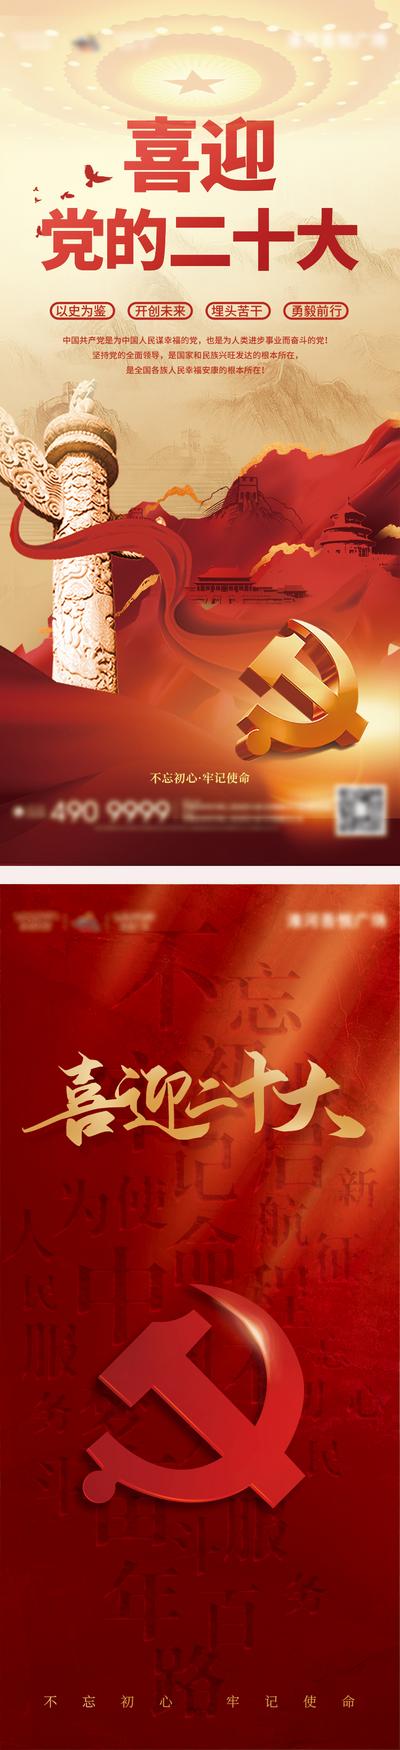 南门网 广告 单图 宣传 二十大 党建 系列